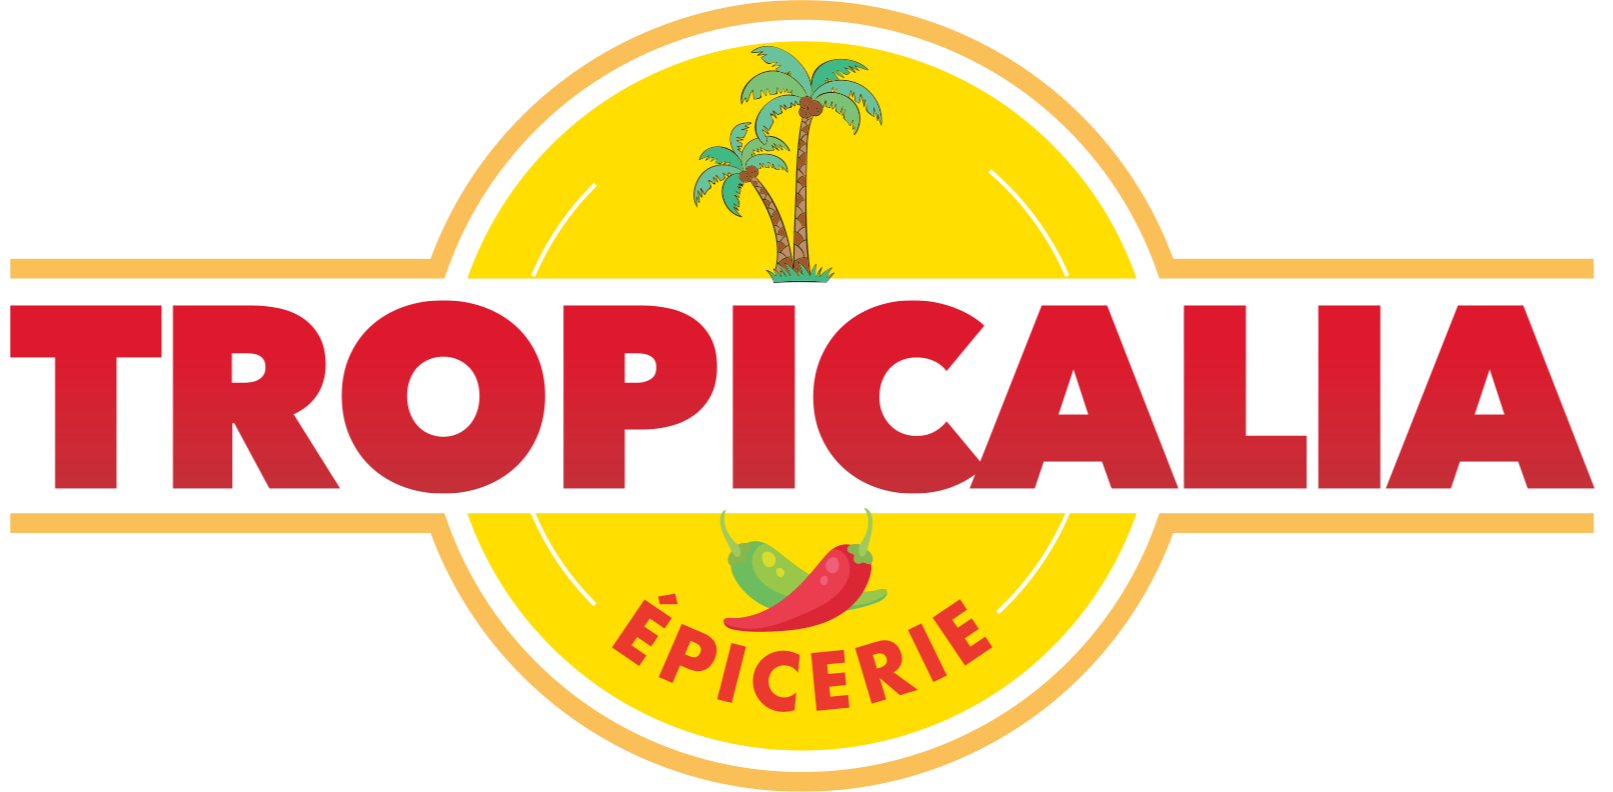 Épicerie Tropicalia logo